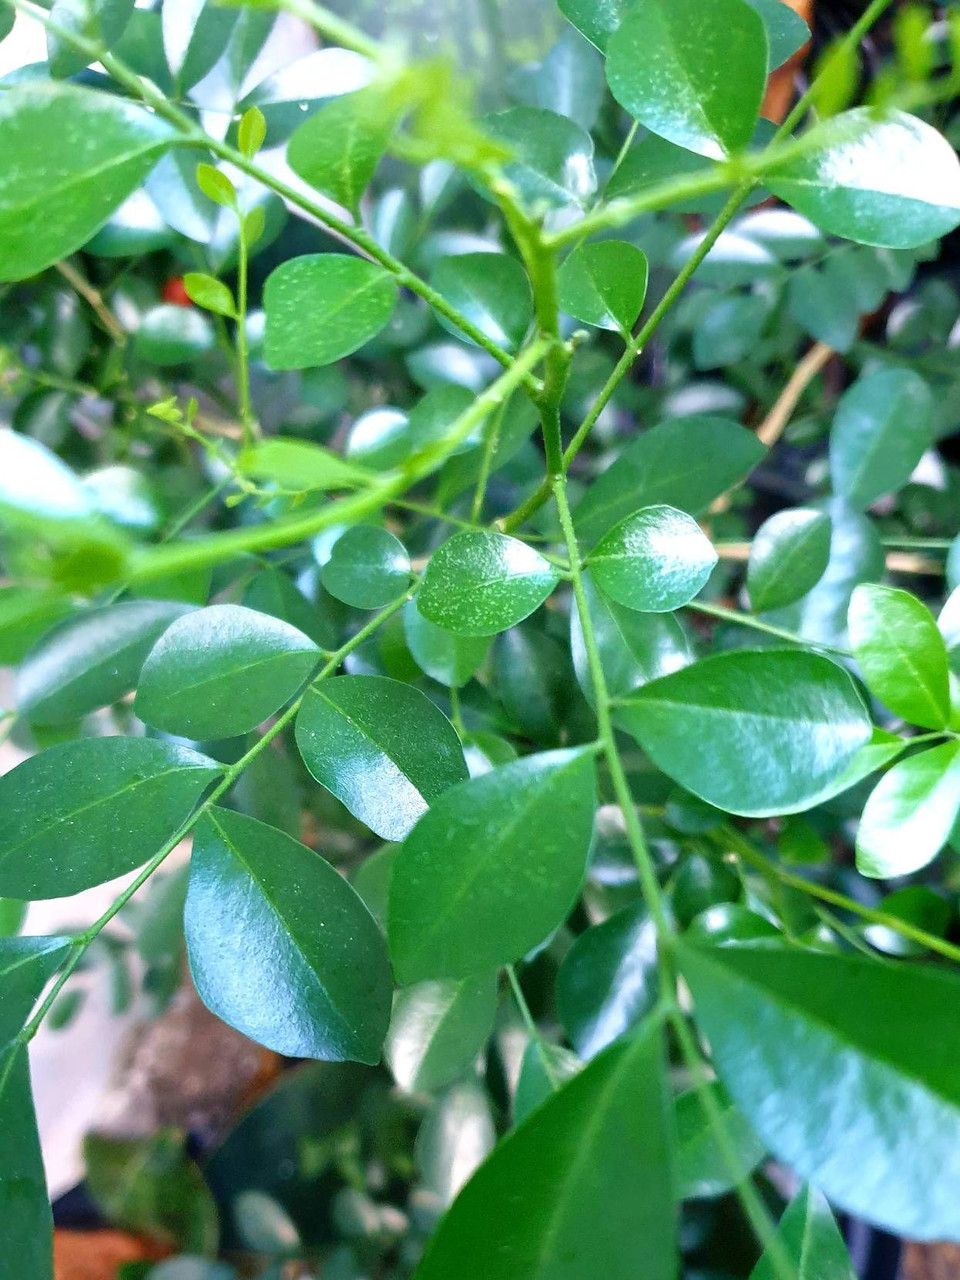 Nusantara Delicate Kemuning Leaves -  Murraya paniculata Dried ,  80  gram